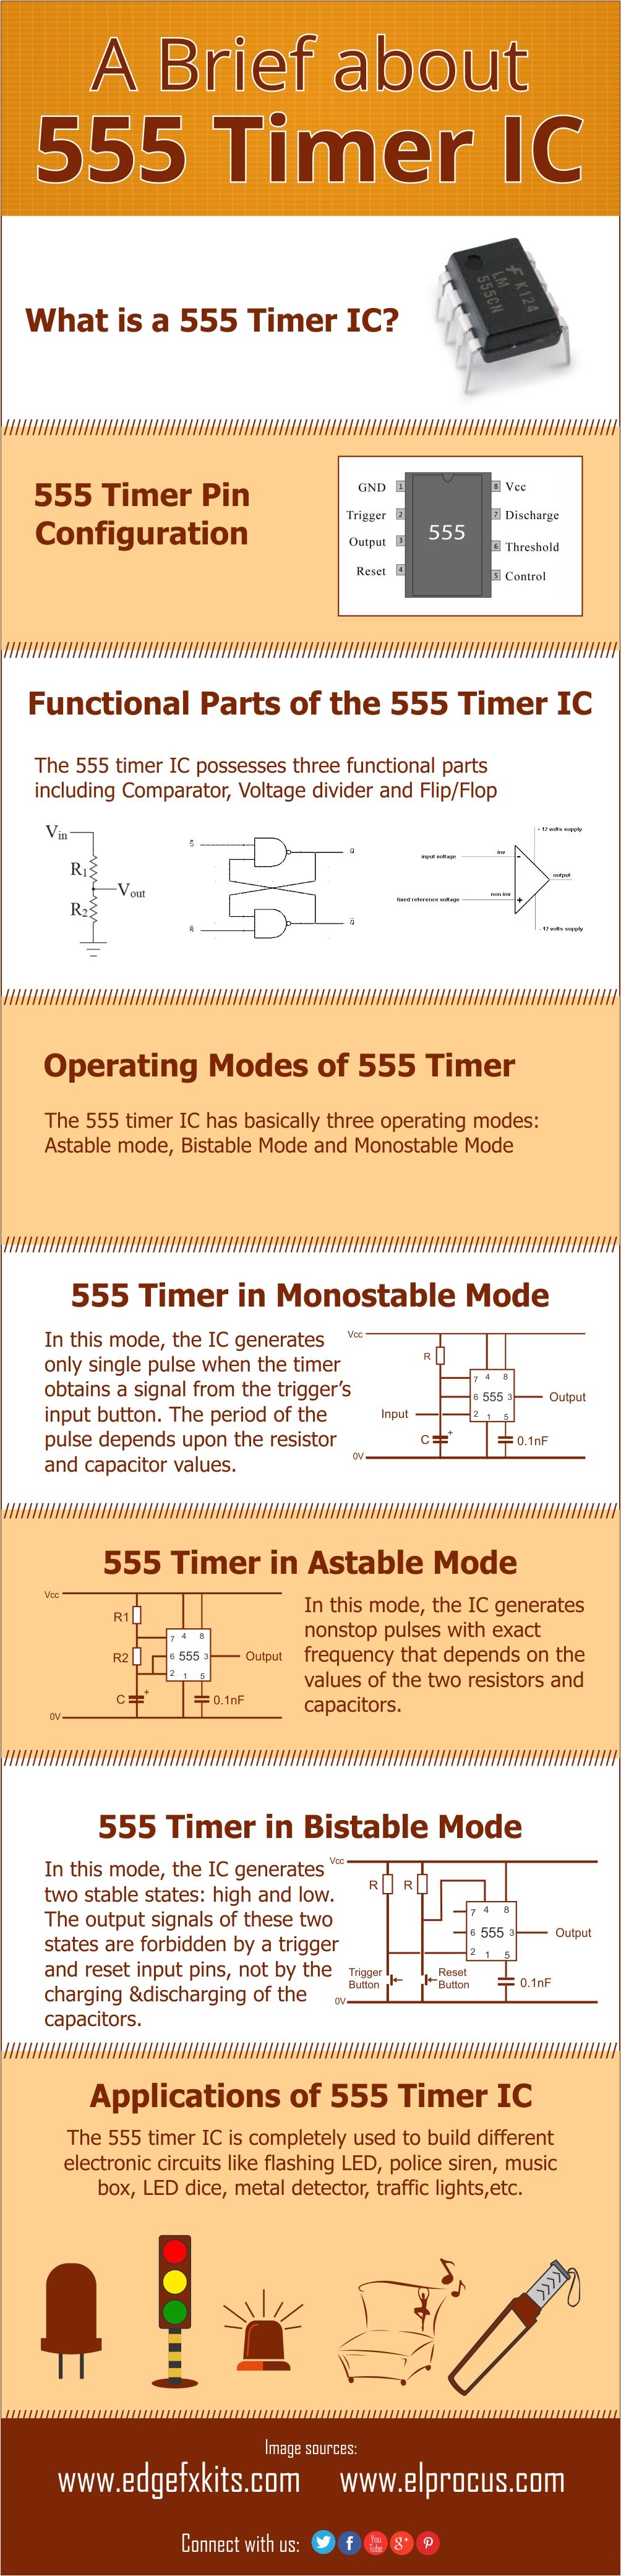 Infografika: Krótka informacja o zegarze IC 555 i jego zastosowaniach